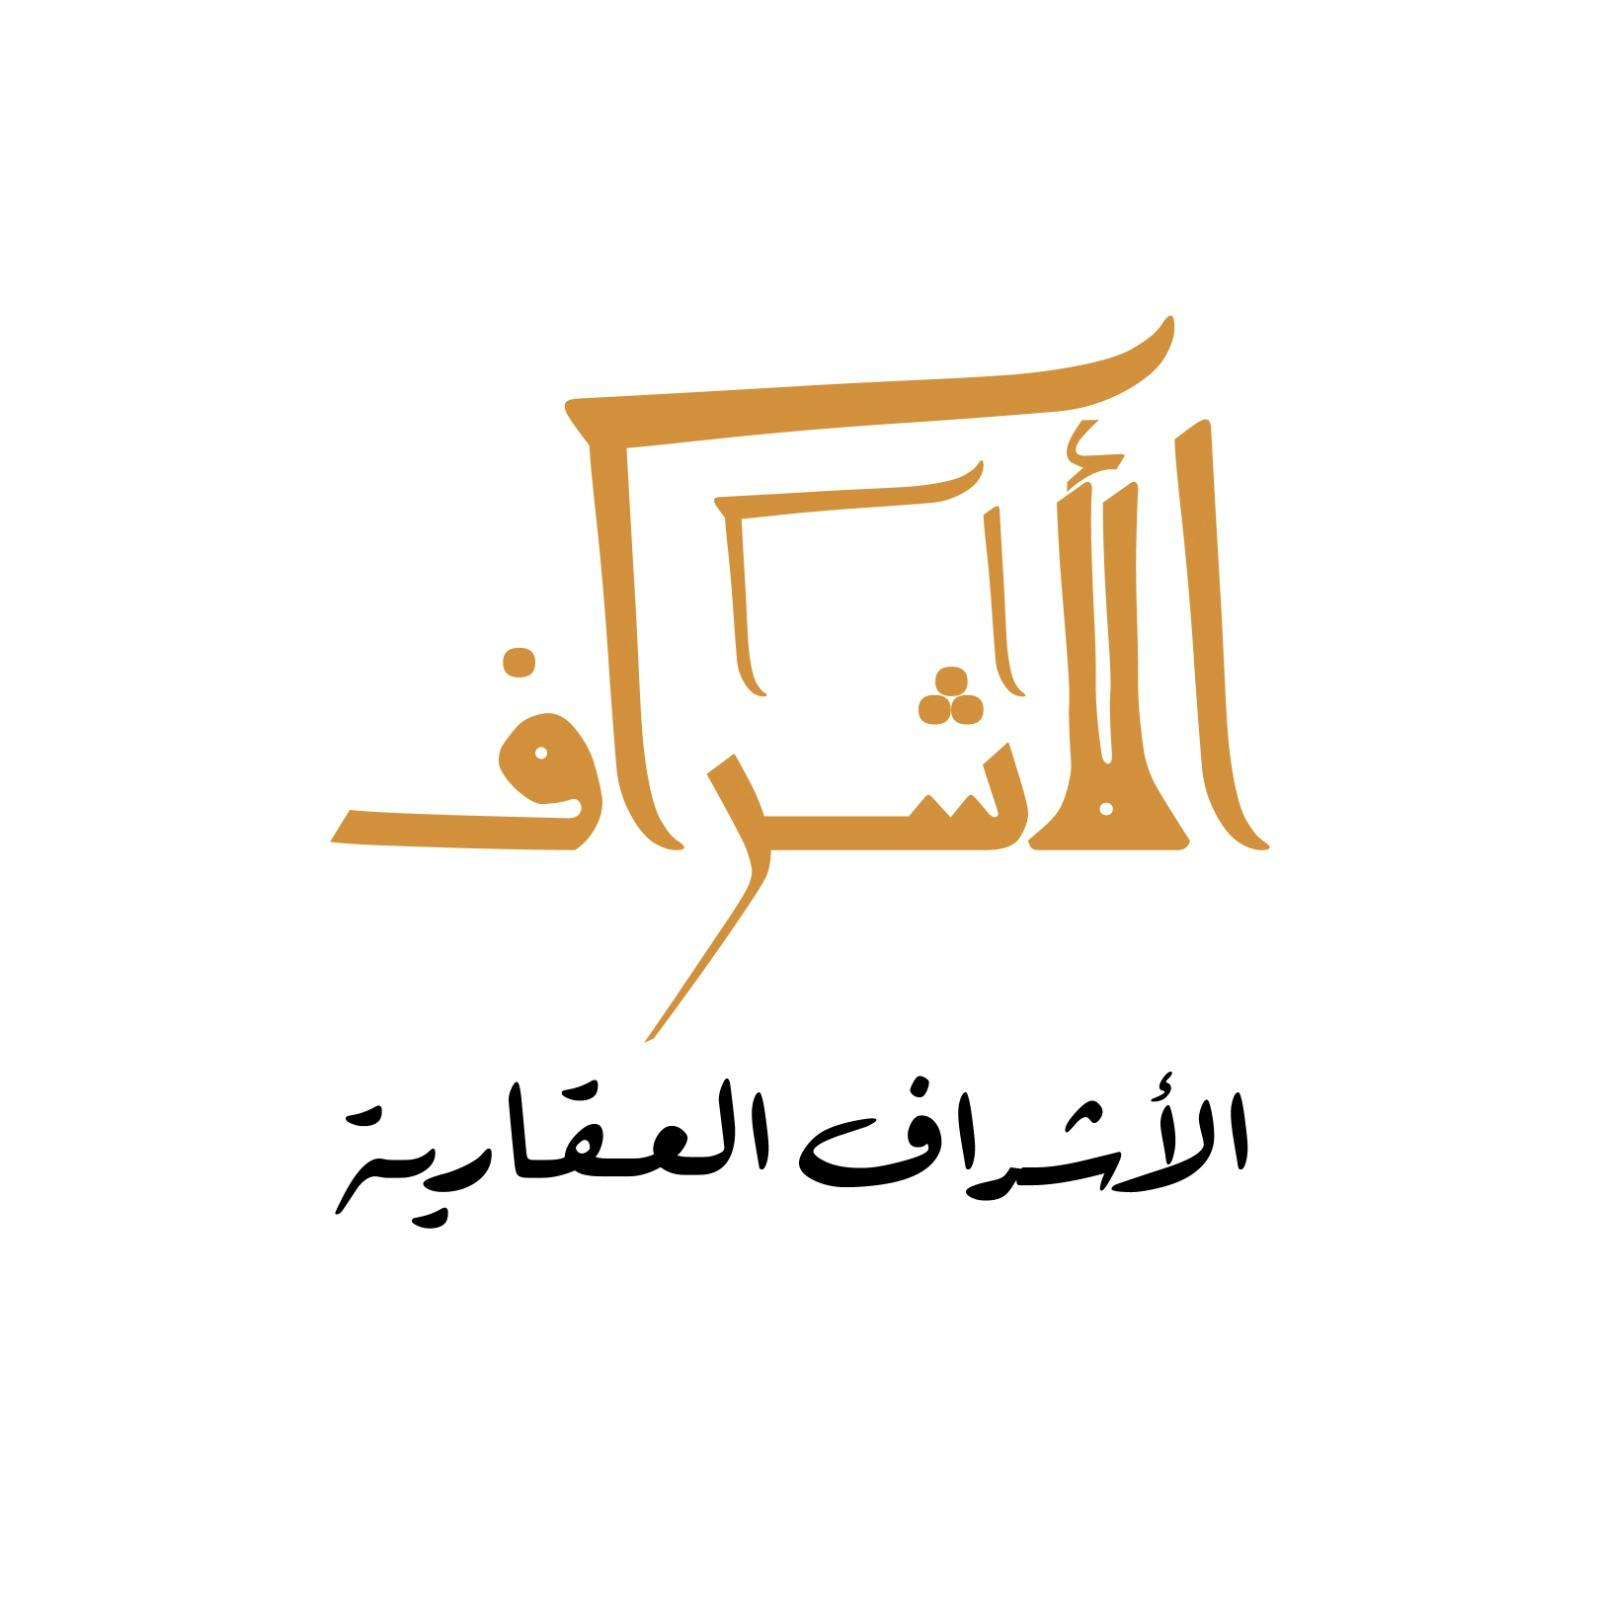 الأشراف العقارية -عقارات كويتية مكتب عقاري مرخص مشارك في بوعقار